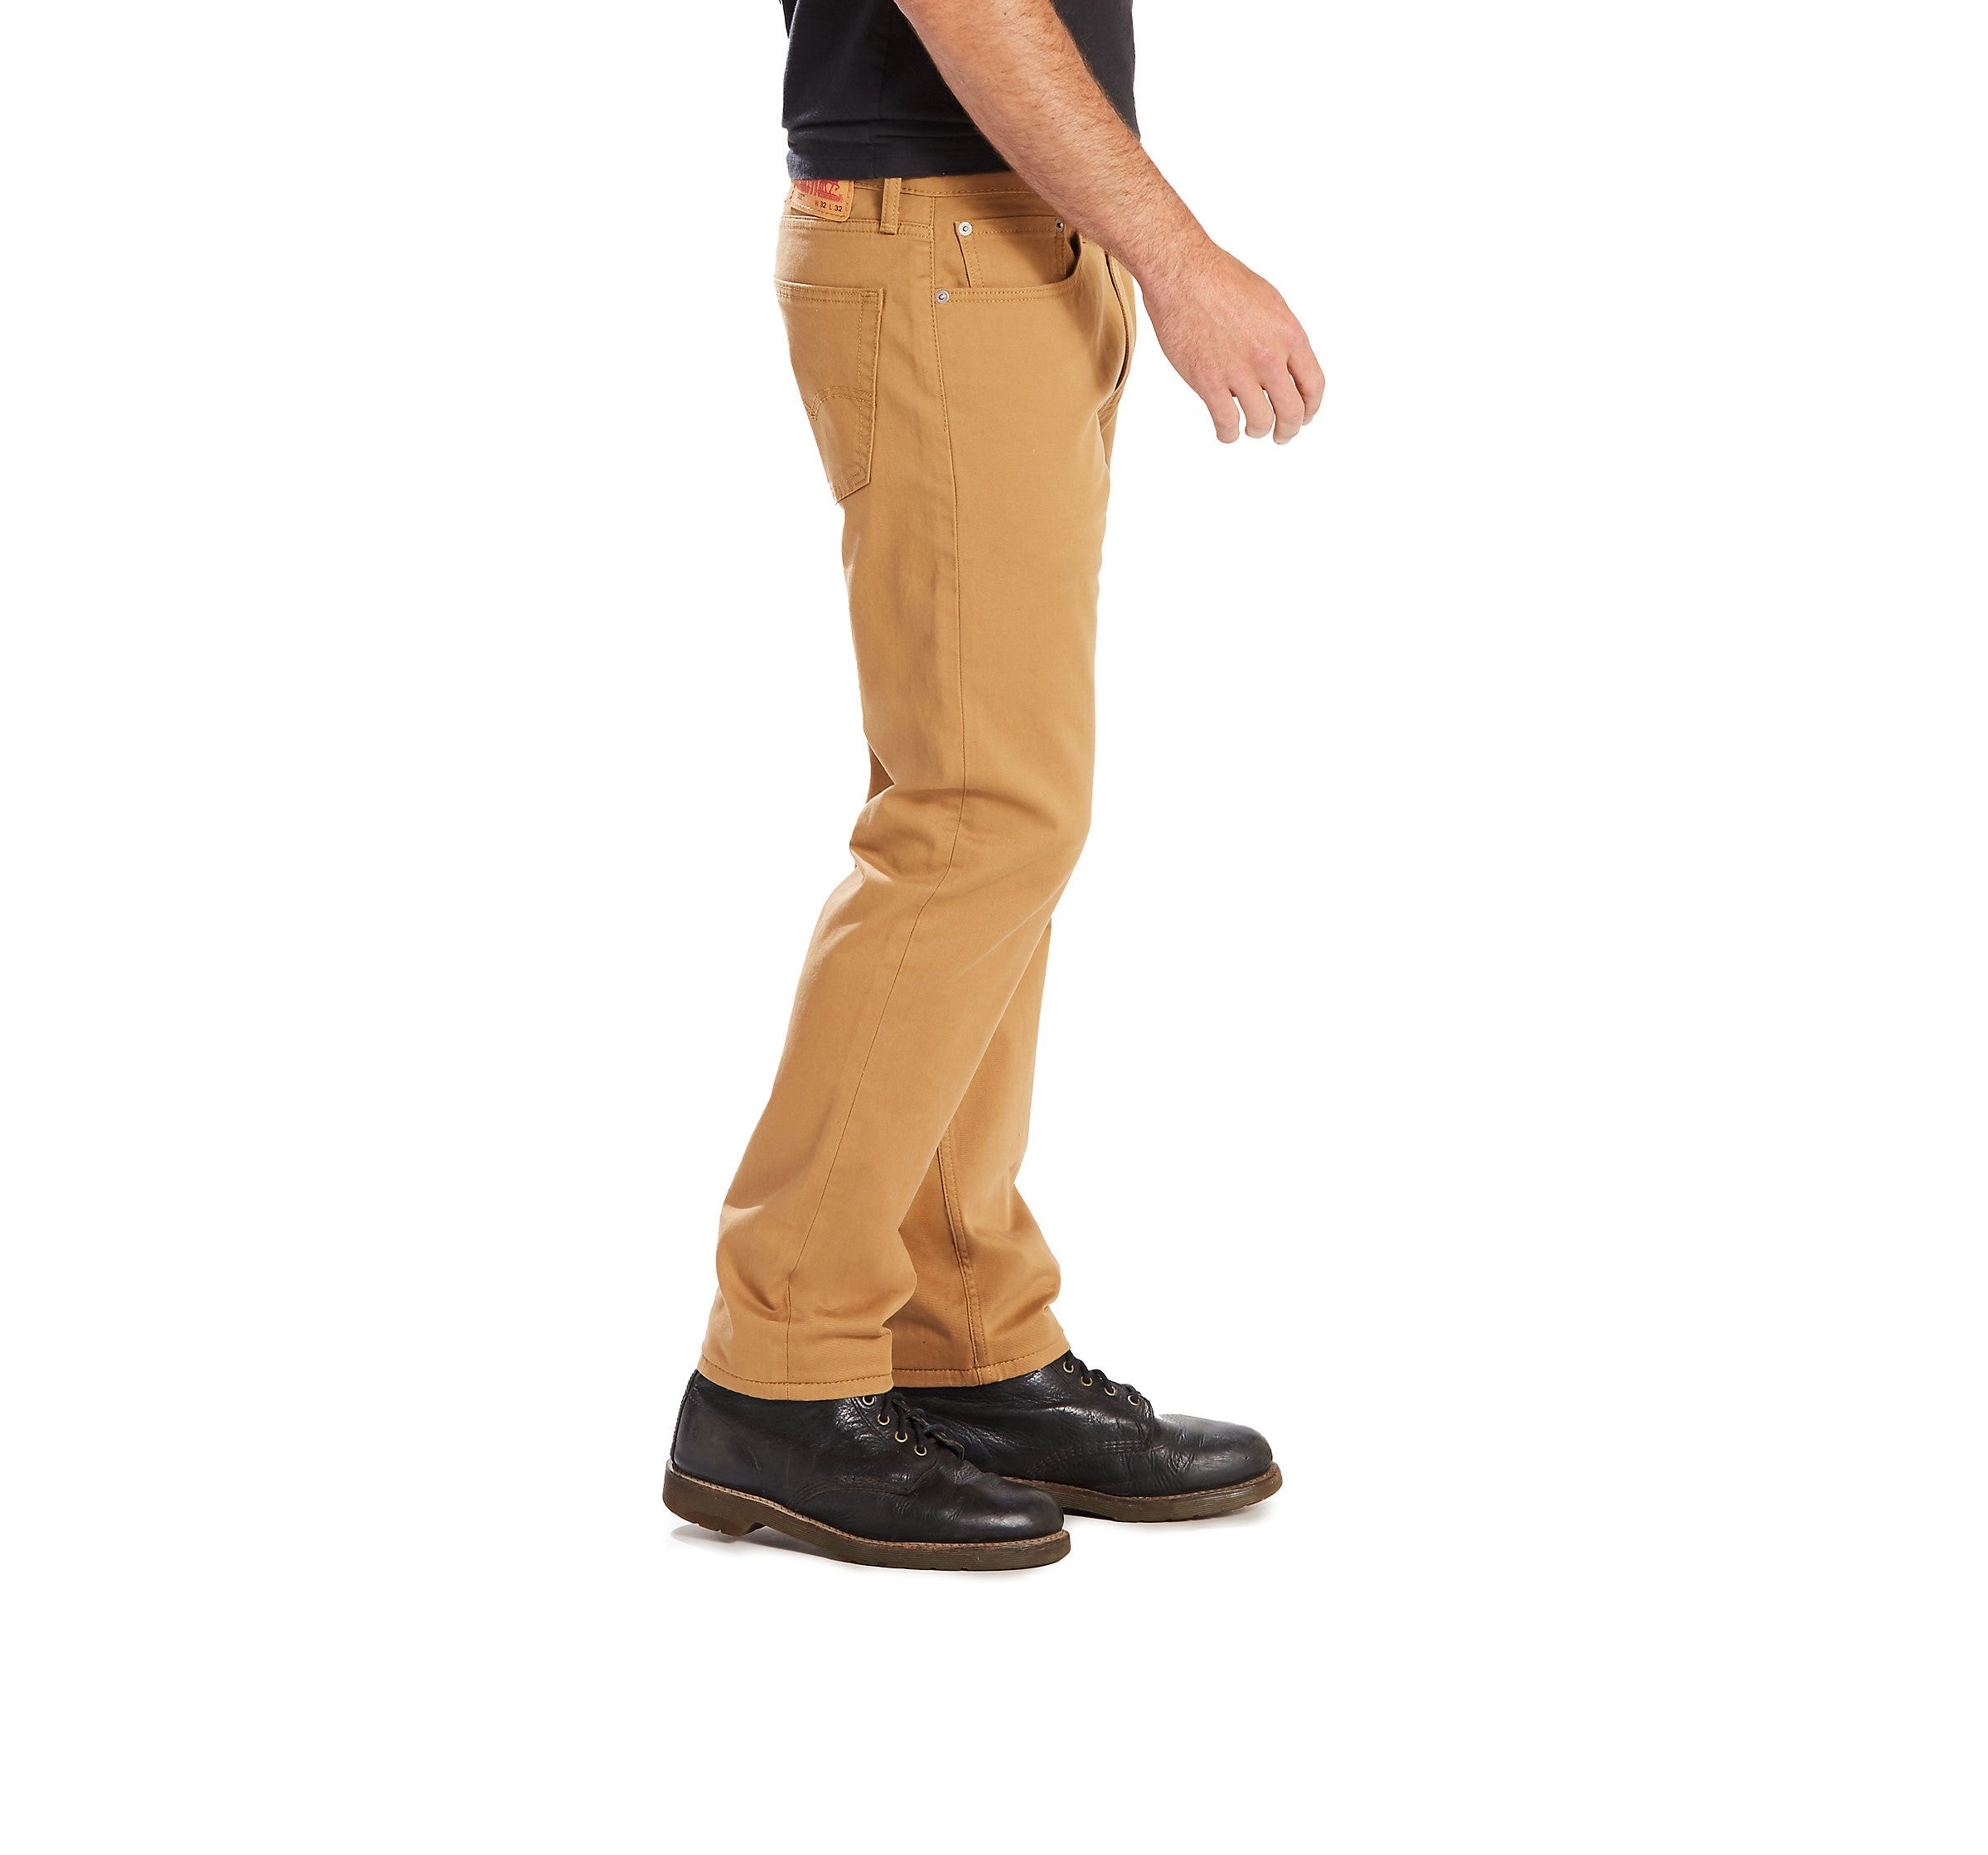 pantalon-jeans-levis-502-regular-fit-p-caballeros